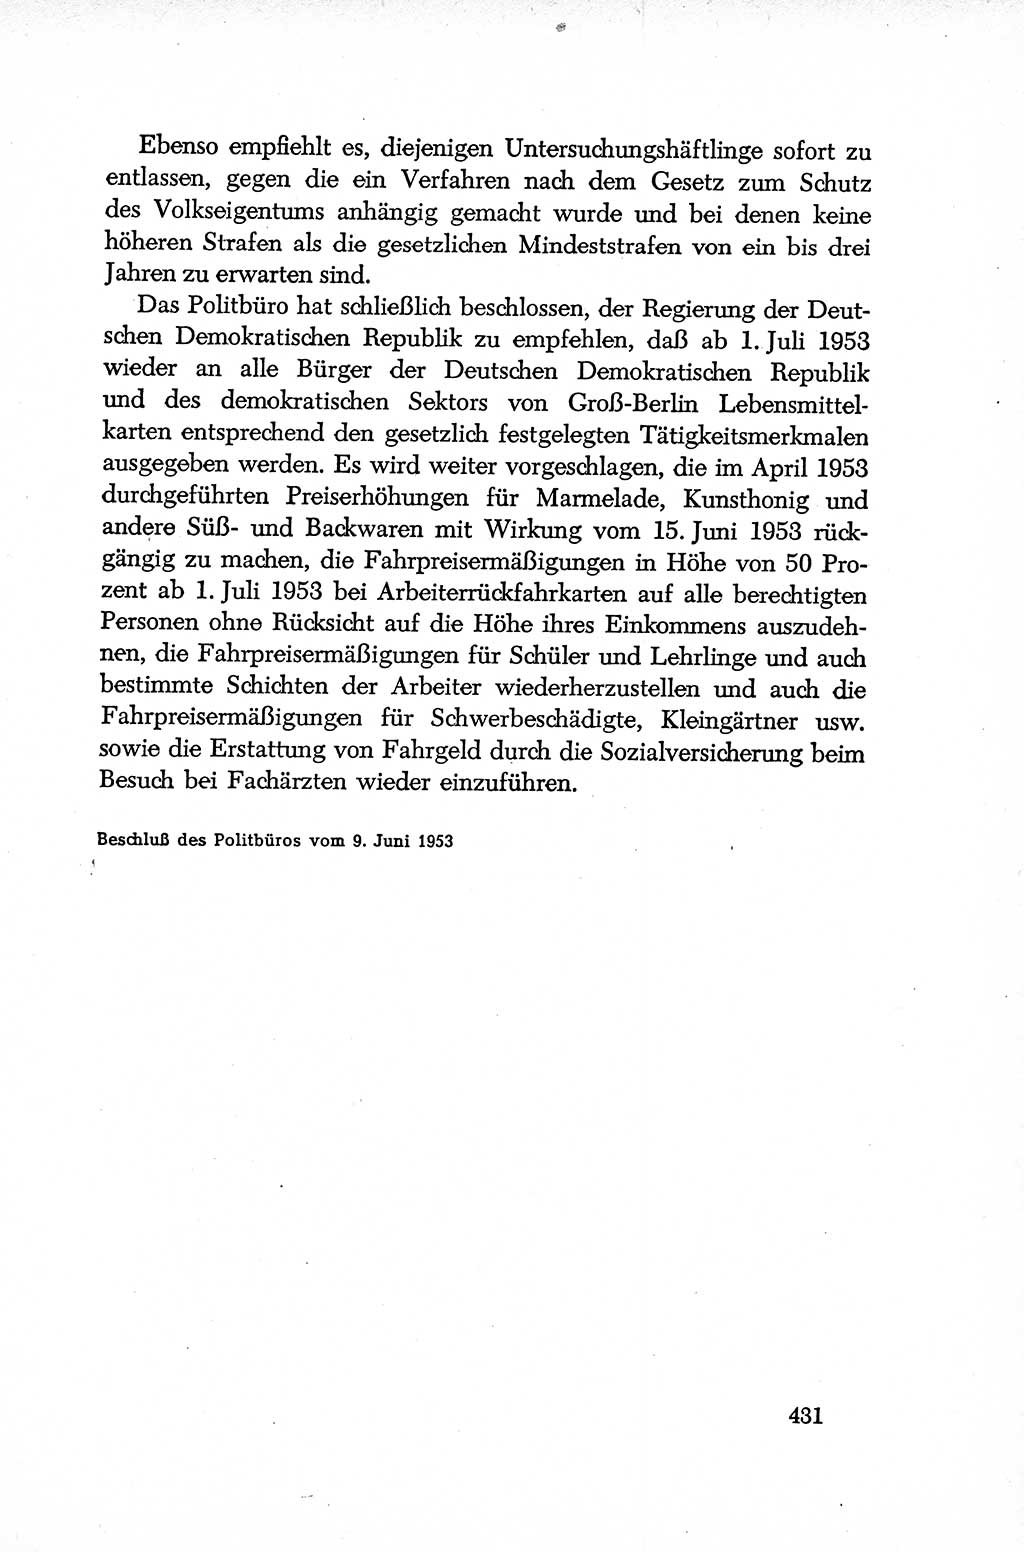 Dokumente der Sozialistischen Einheitspartei Deutschlands (SED) [Deutsche Demokratische Republik (DDR)] 1952-1953, Seite 431 (Dok. SED DDR 1952-1953, S. 431)